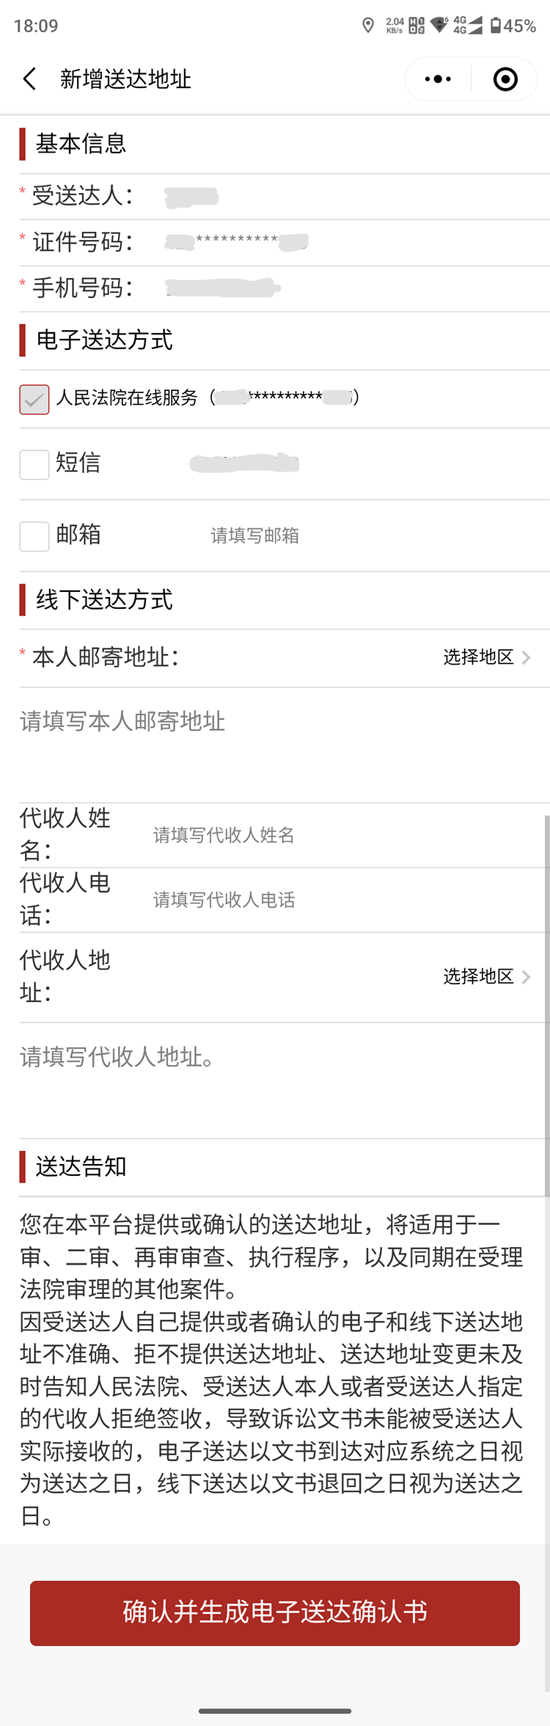 天津手机法院网上立案